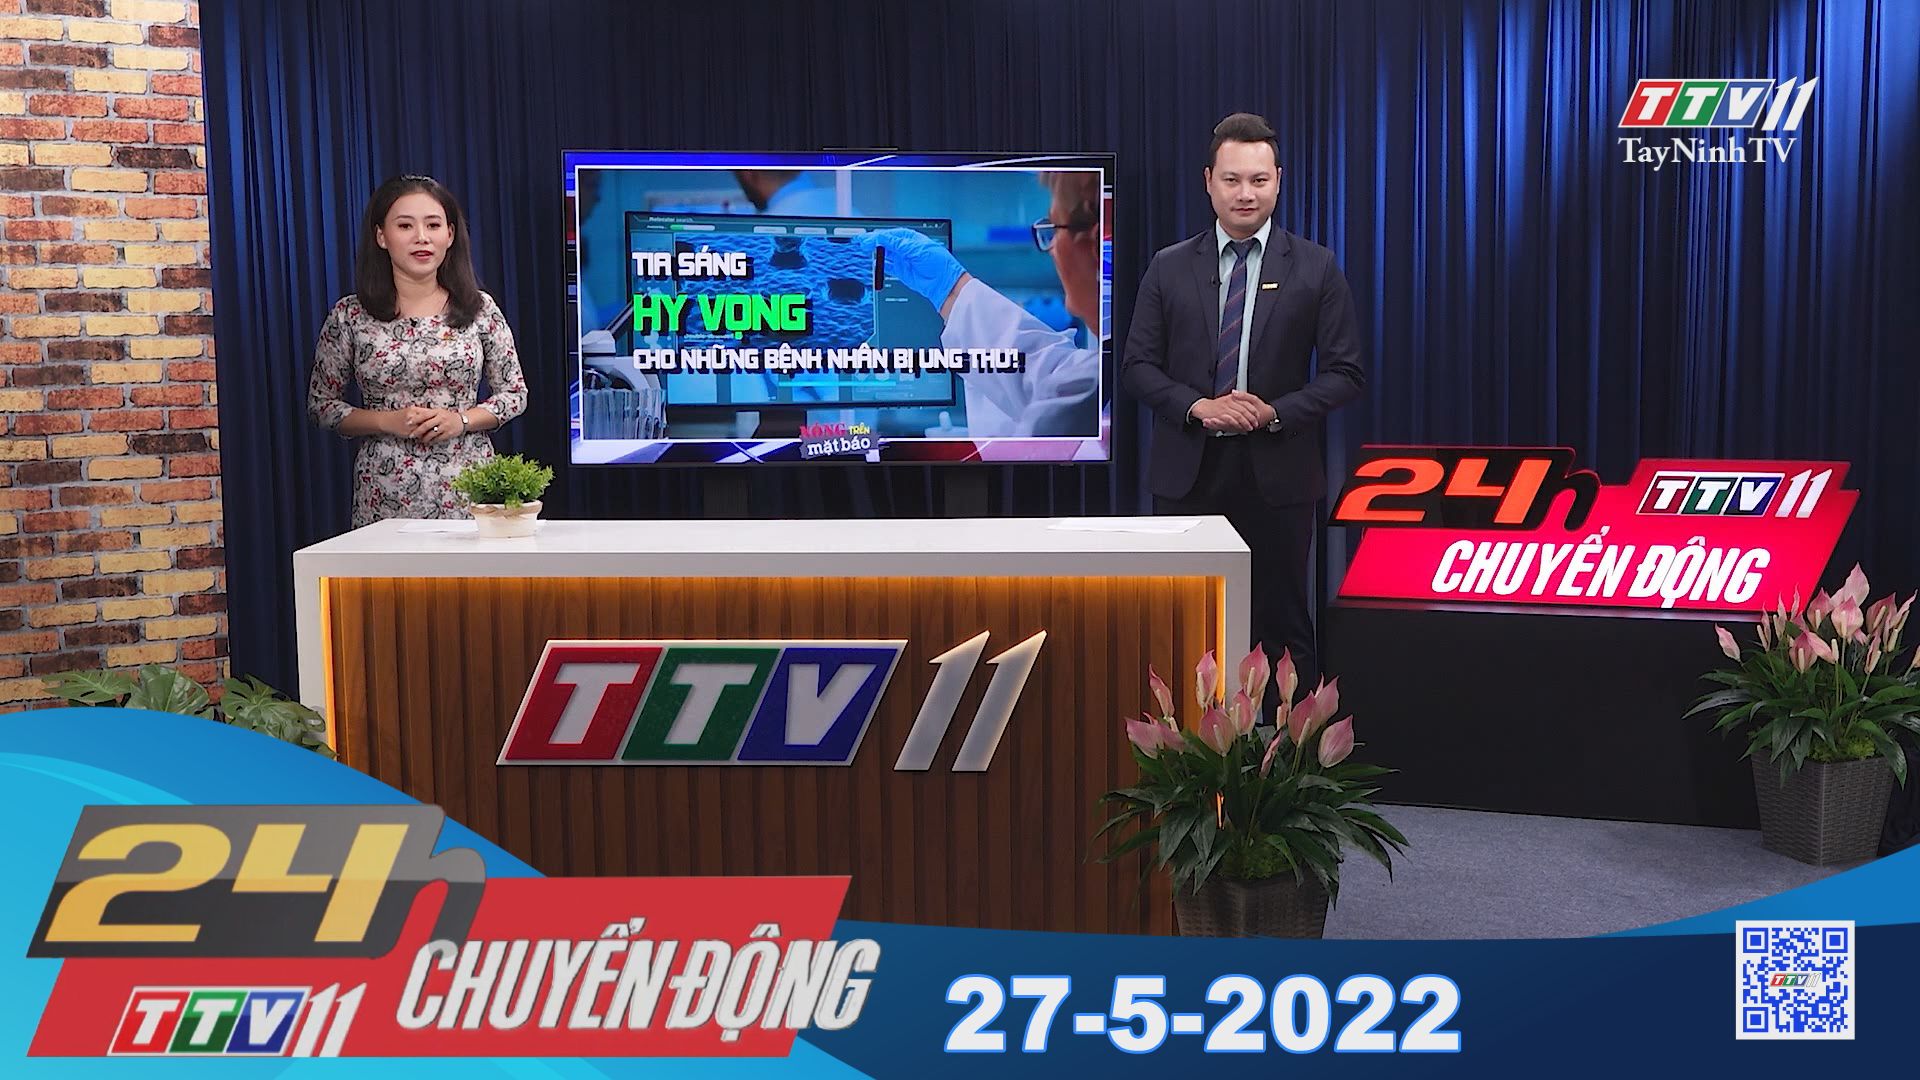 24h Chuyển động 27-5-2022 | Tin tức hôm nay | TayNinhTV